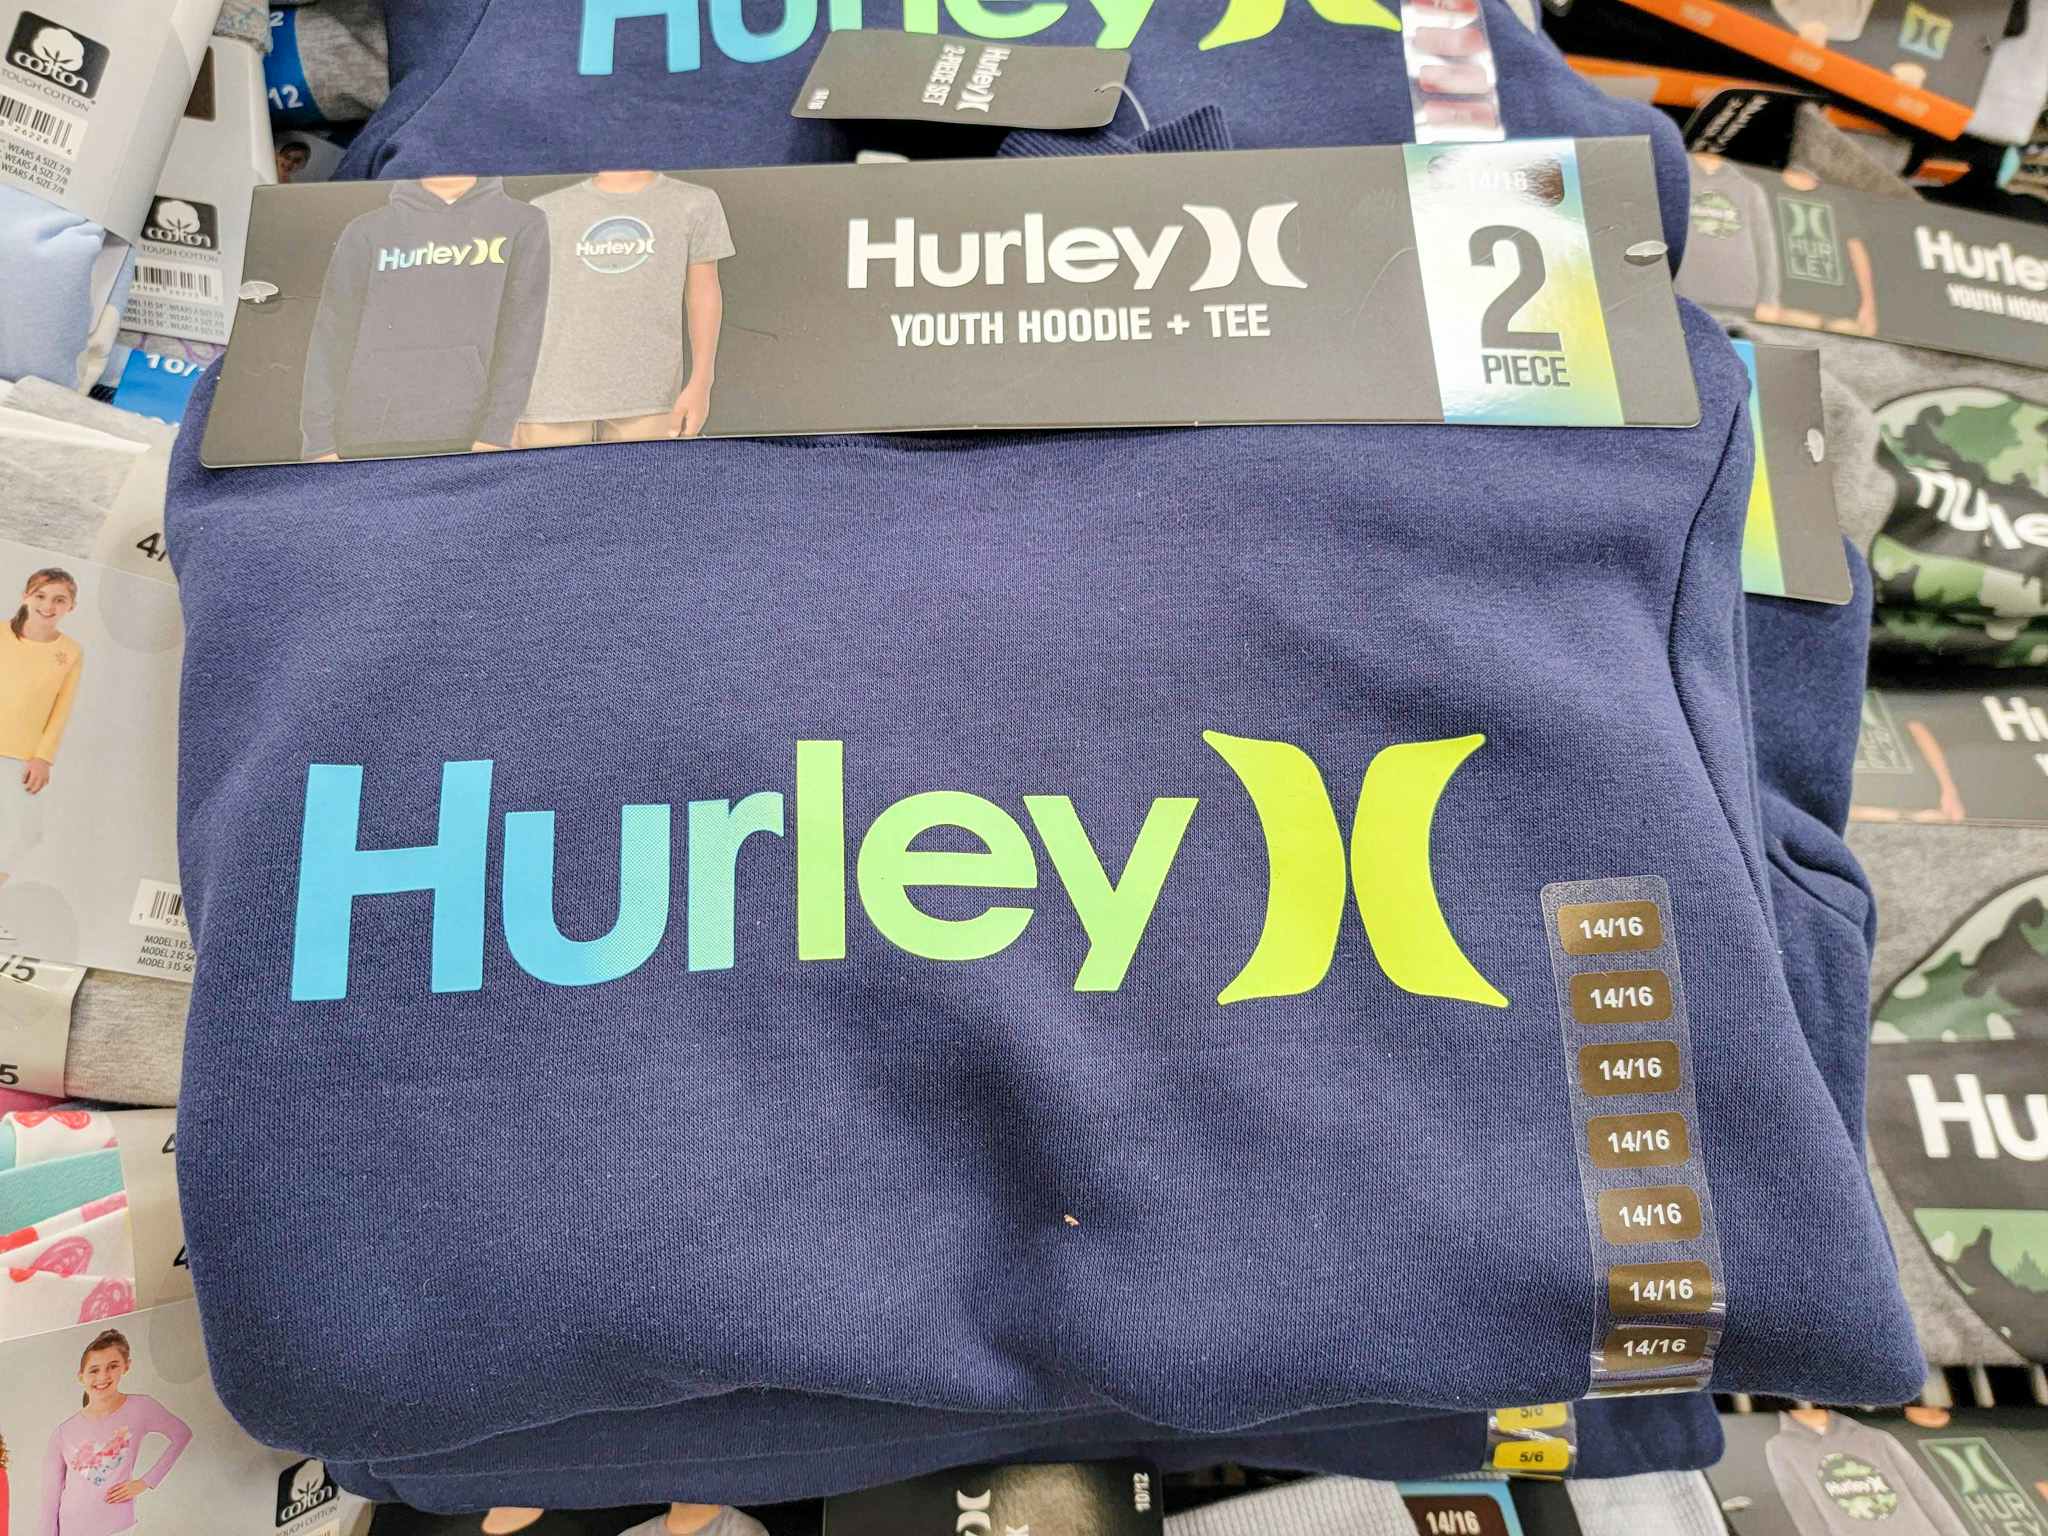 hurley hoodie and tee pack